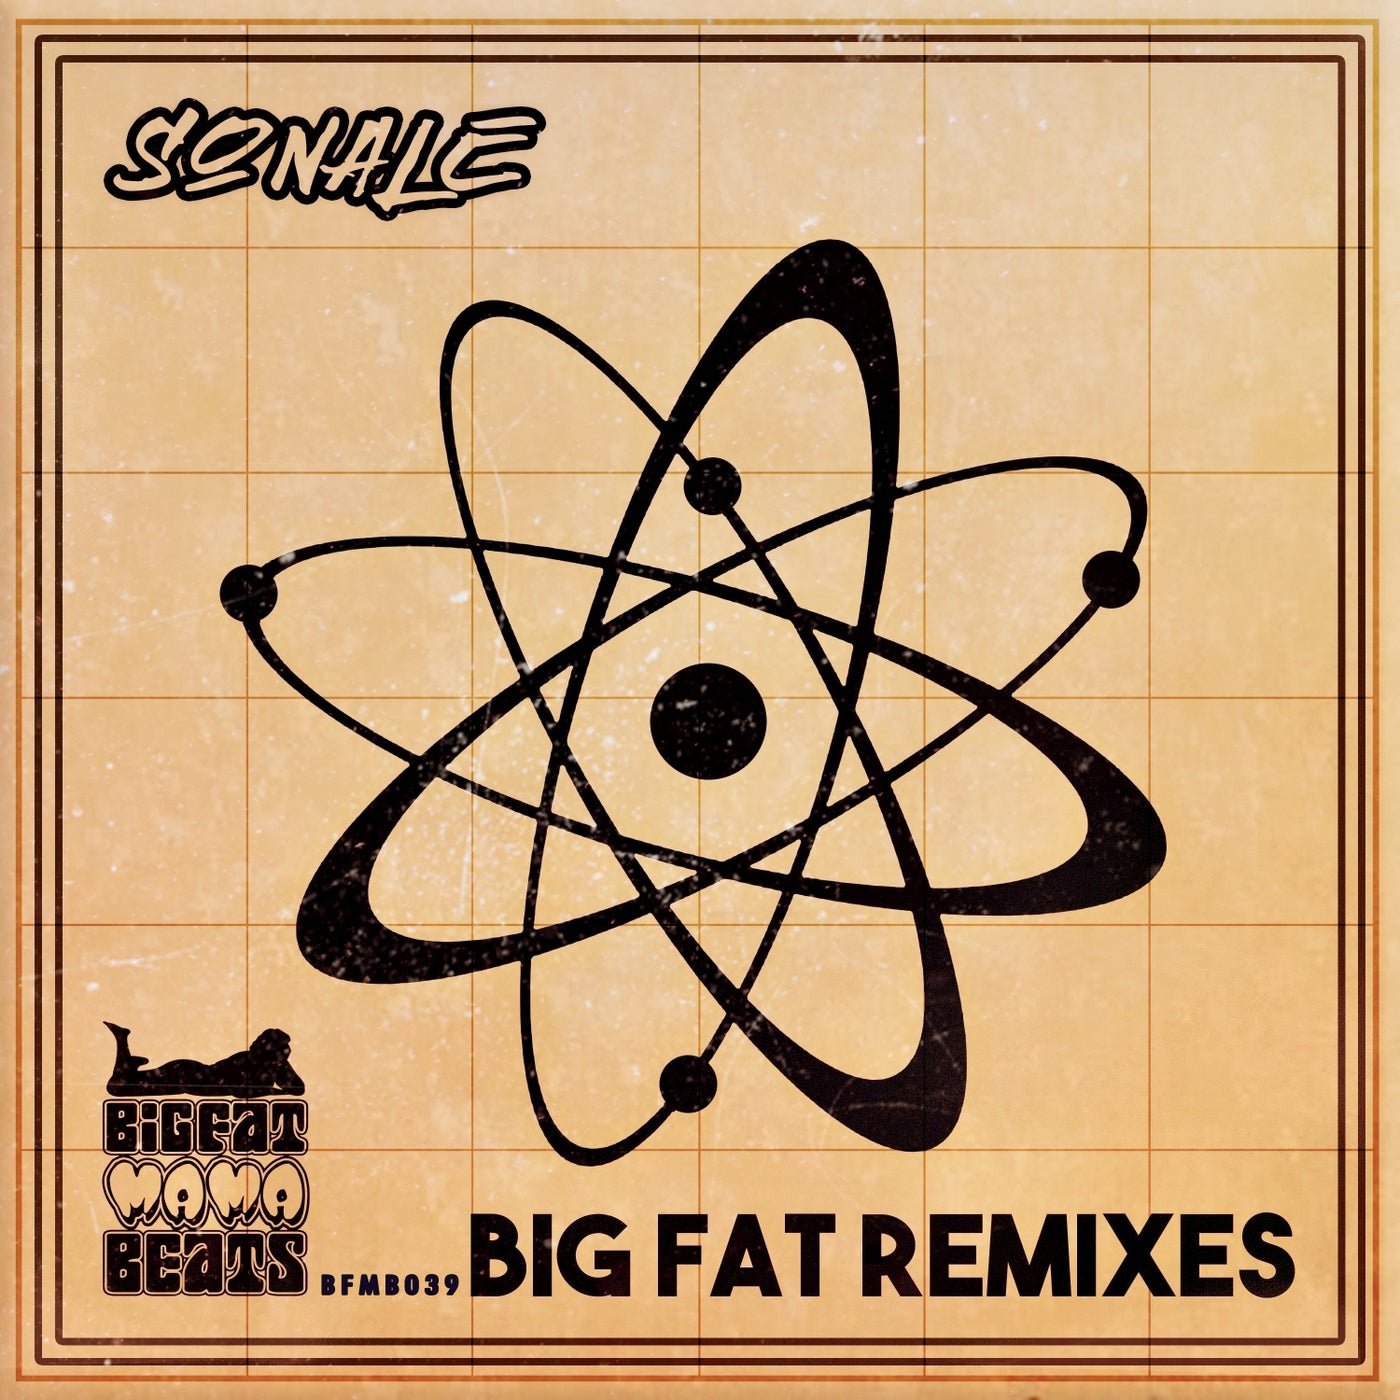 Big Fat Remixes